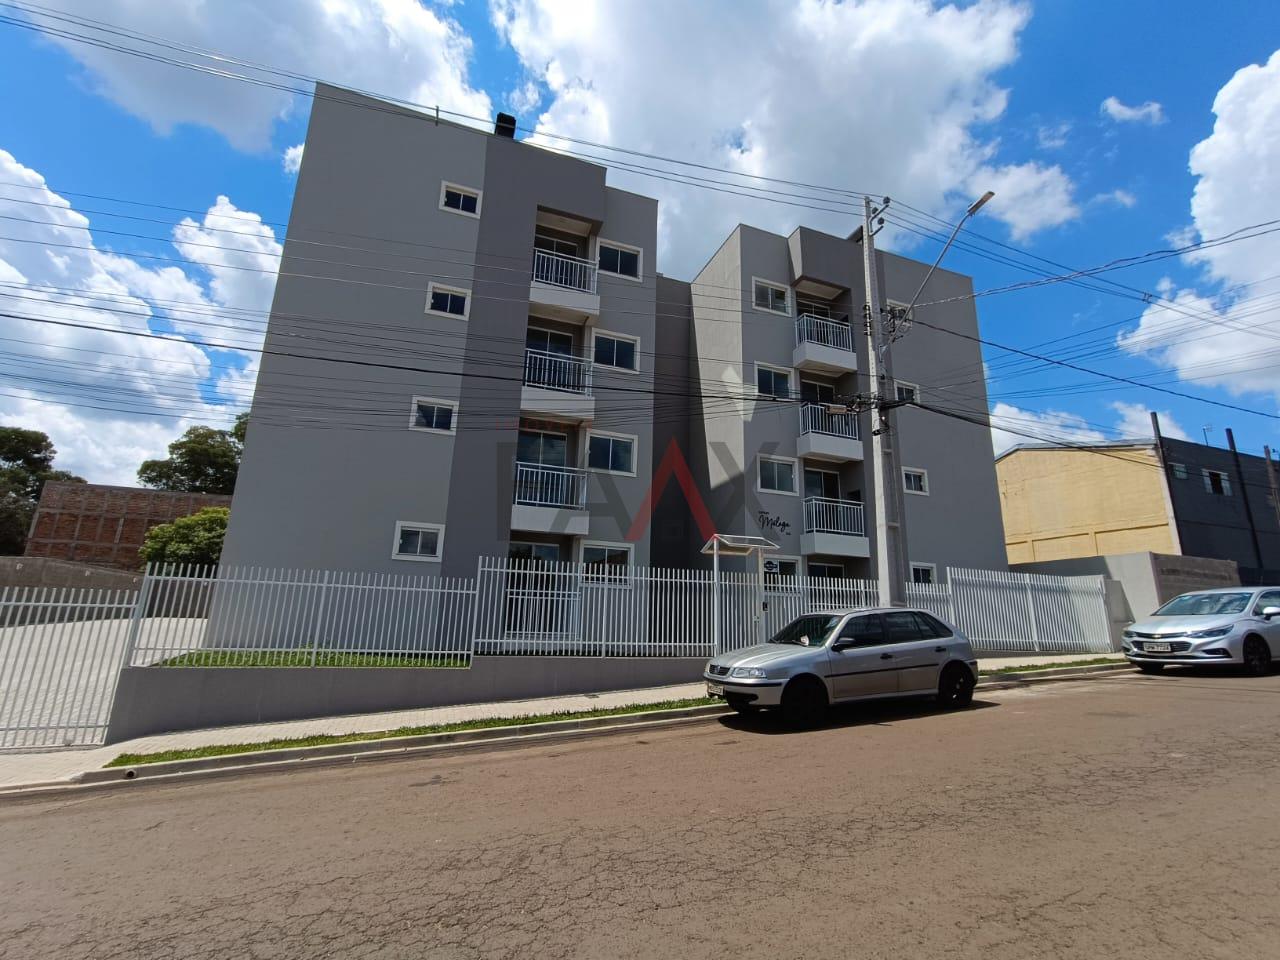 Apartamento à venda residencial Malaga, BAIRRO MORRO ALTO, GUARAPUAVA - PR